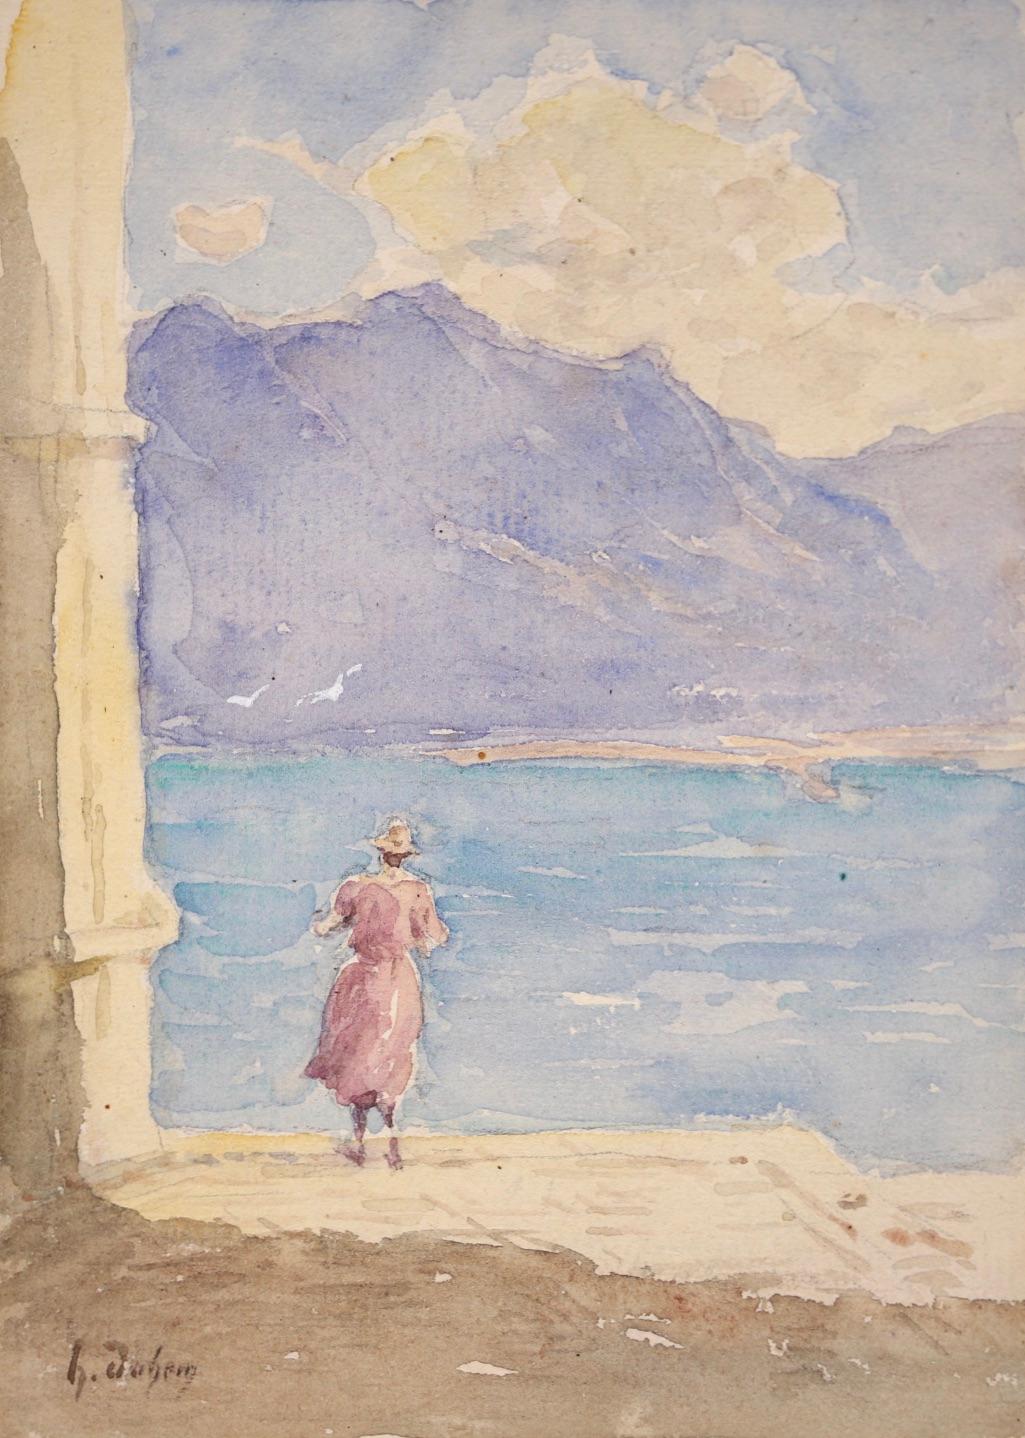 Ein schönes und zartes Aquarell auf Papier von Henri Duhem, einem französischen Impressionisten, um 1920. Das Werk zeigt eine Frau in einem rosafarbenen Kleid und einem Sonnenhut, die aus dem blauen Wasser des Lac Leman (Genfer See) in der Schweiz